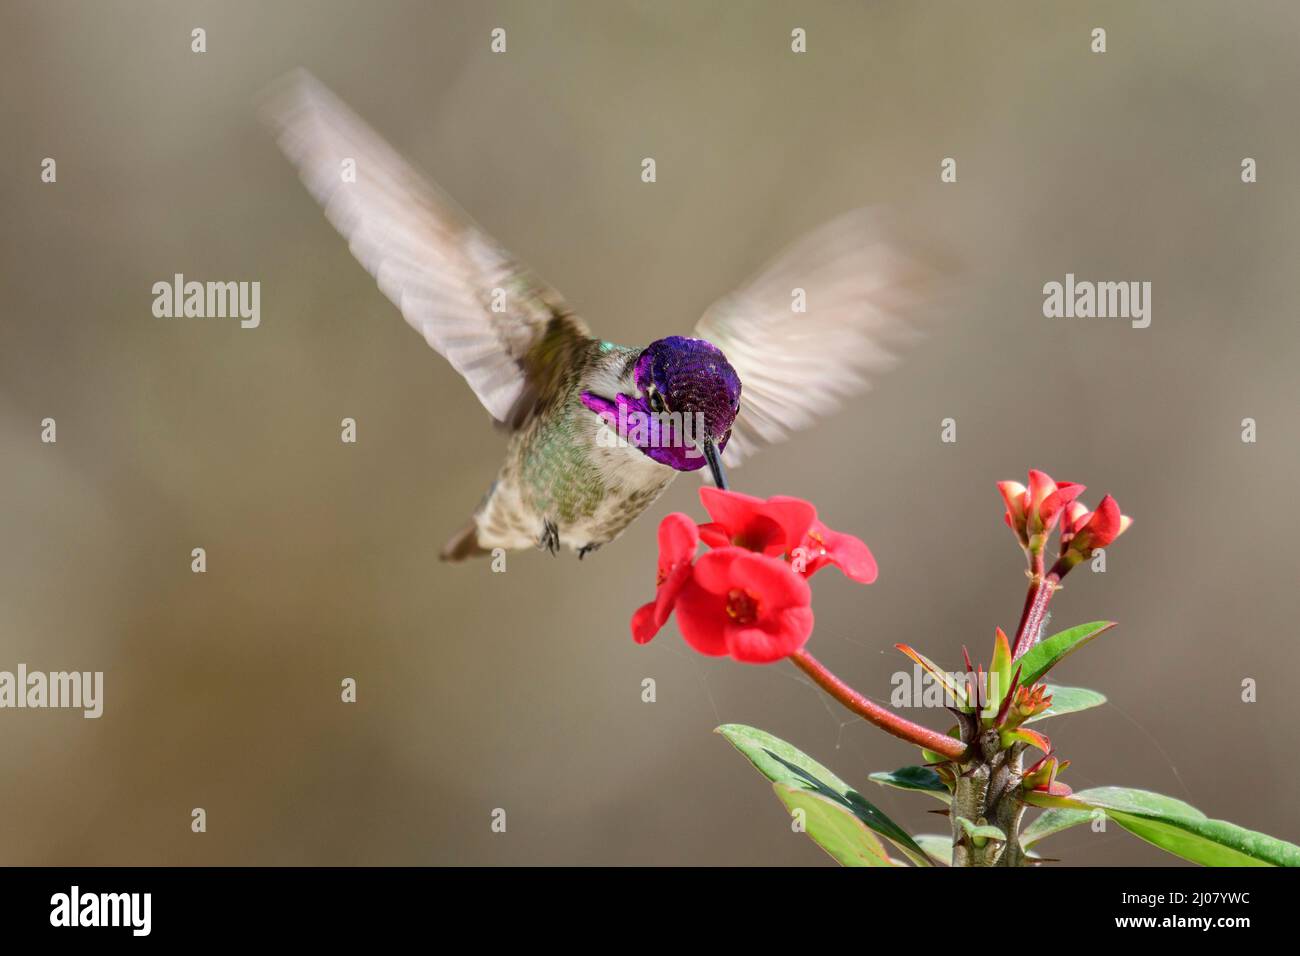 North America, Mexico, Baja California Sur, El Sargento, Costa's Hummingbird,  Calypte costae Stock Photo